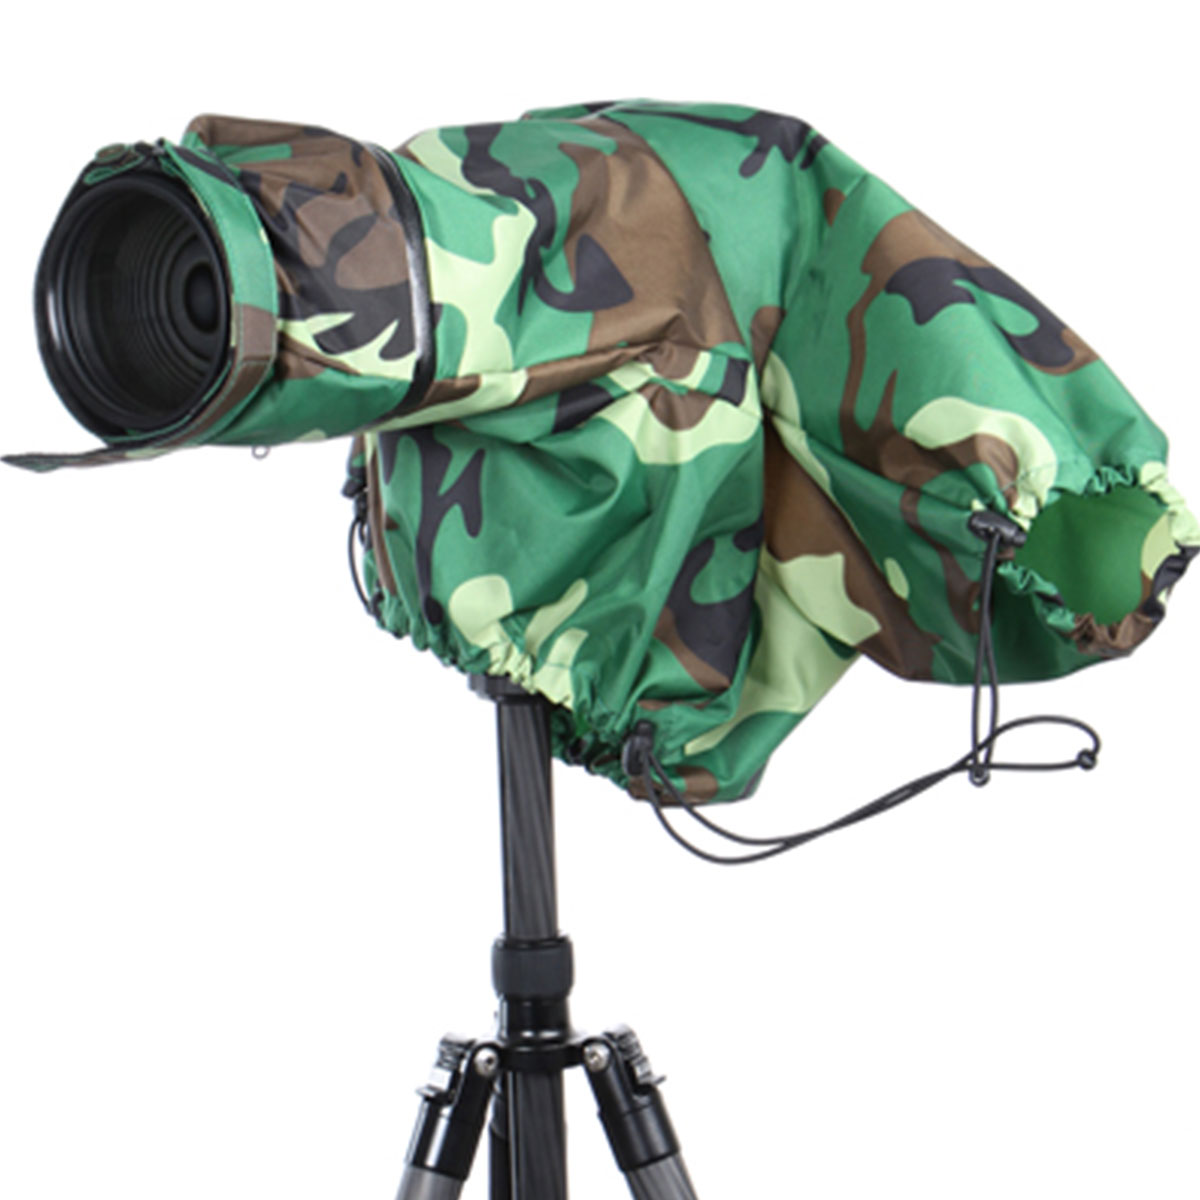 B.I.G. Kamera Tarn- und Regenschutz, camouflage